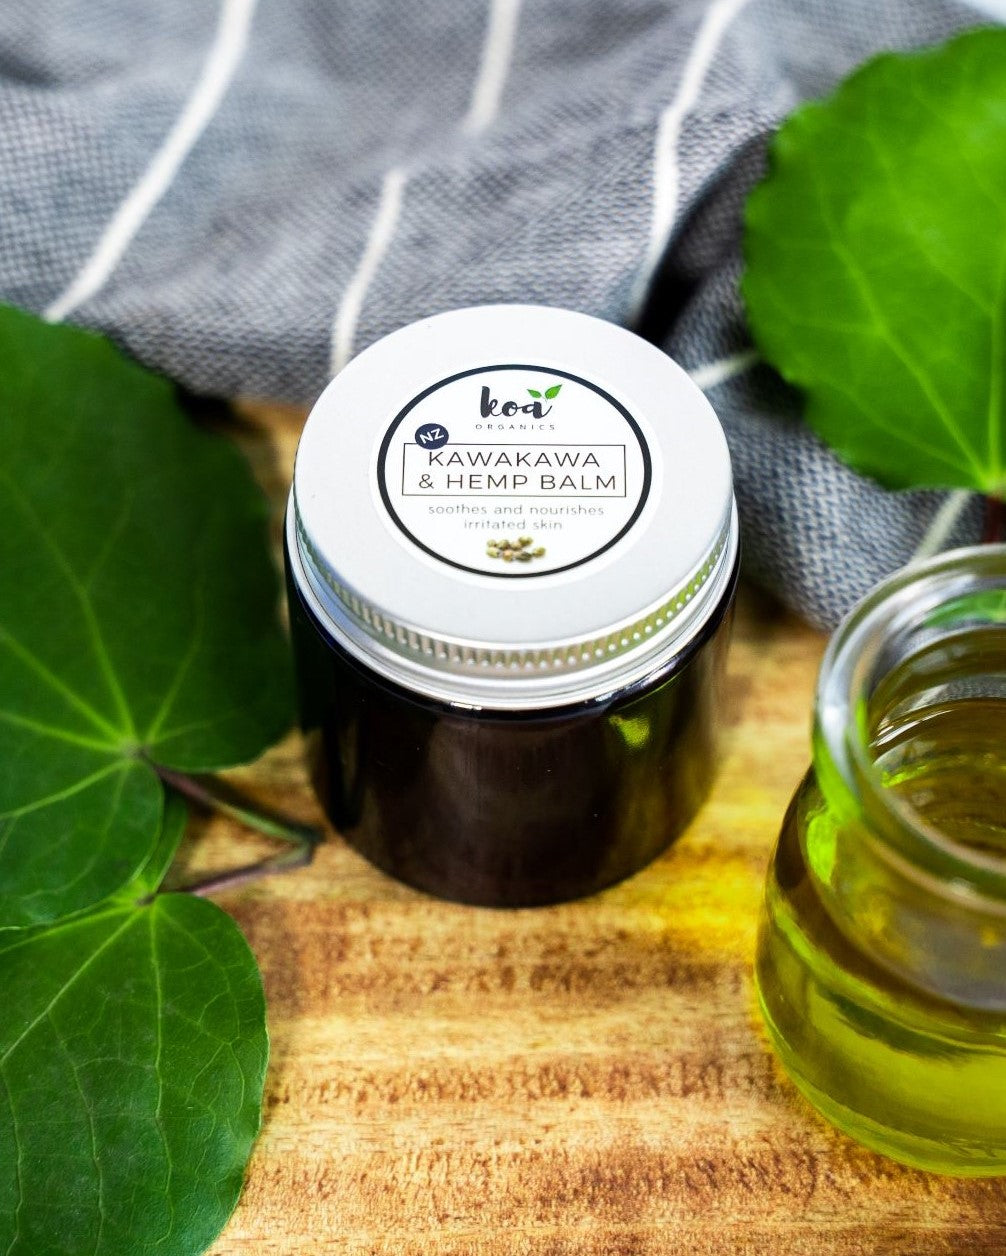 Koa Organics Kawakawa and Hemp Healing Balm